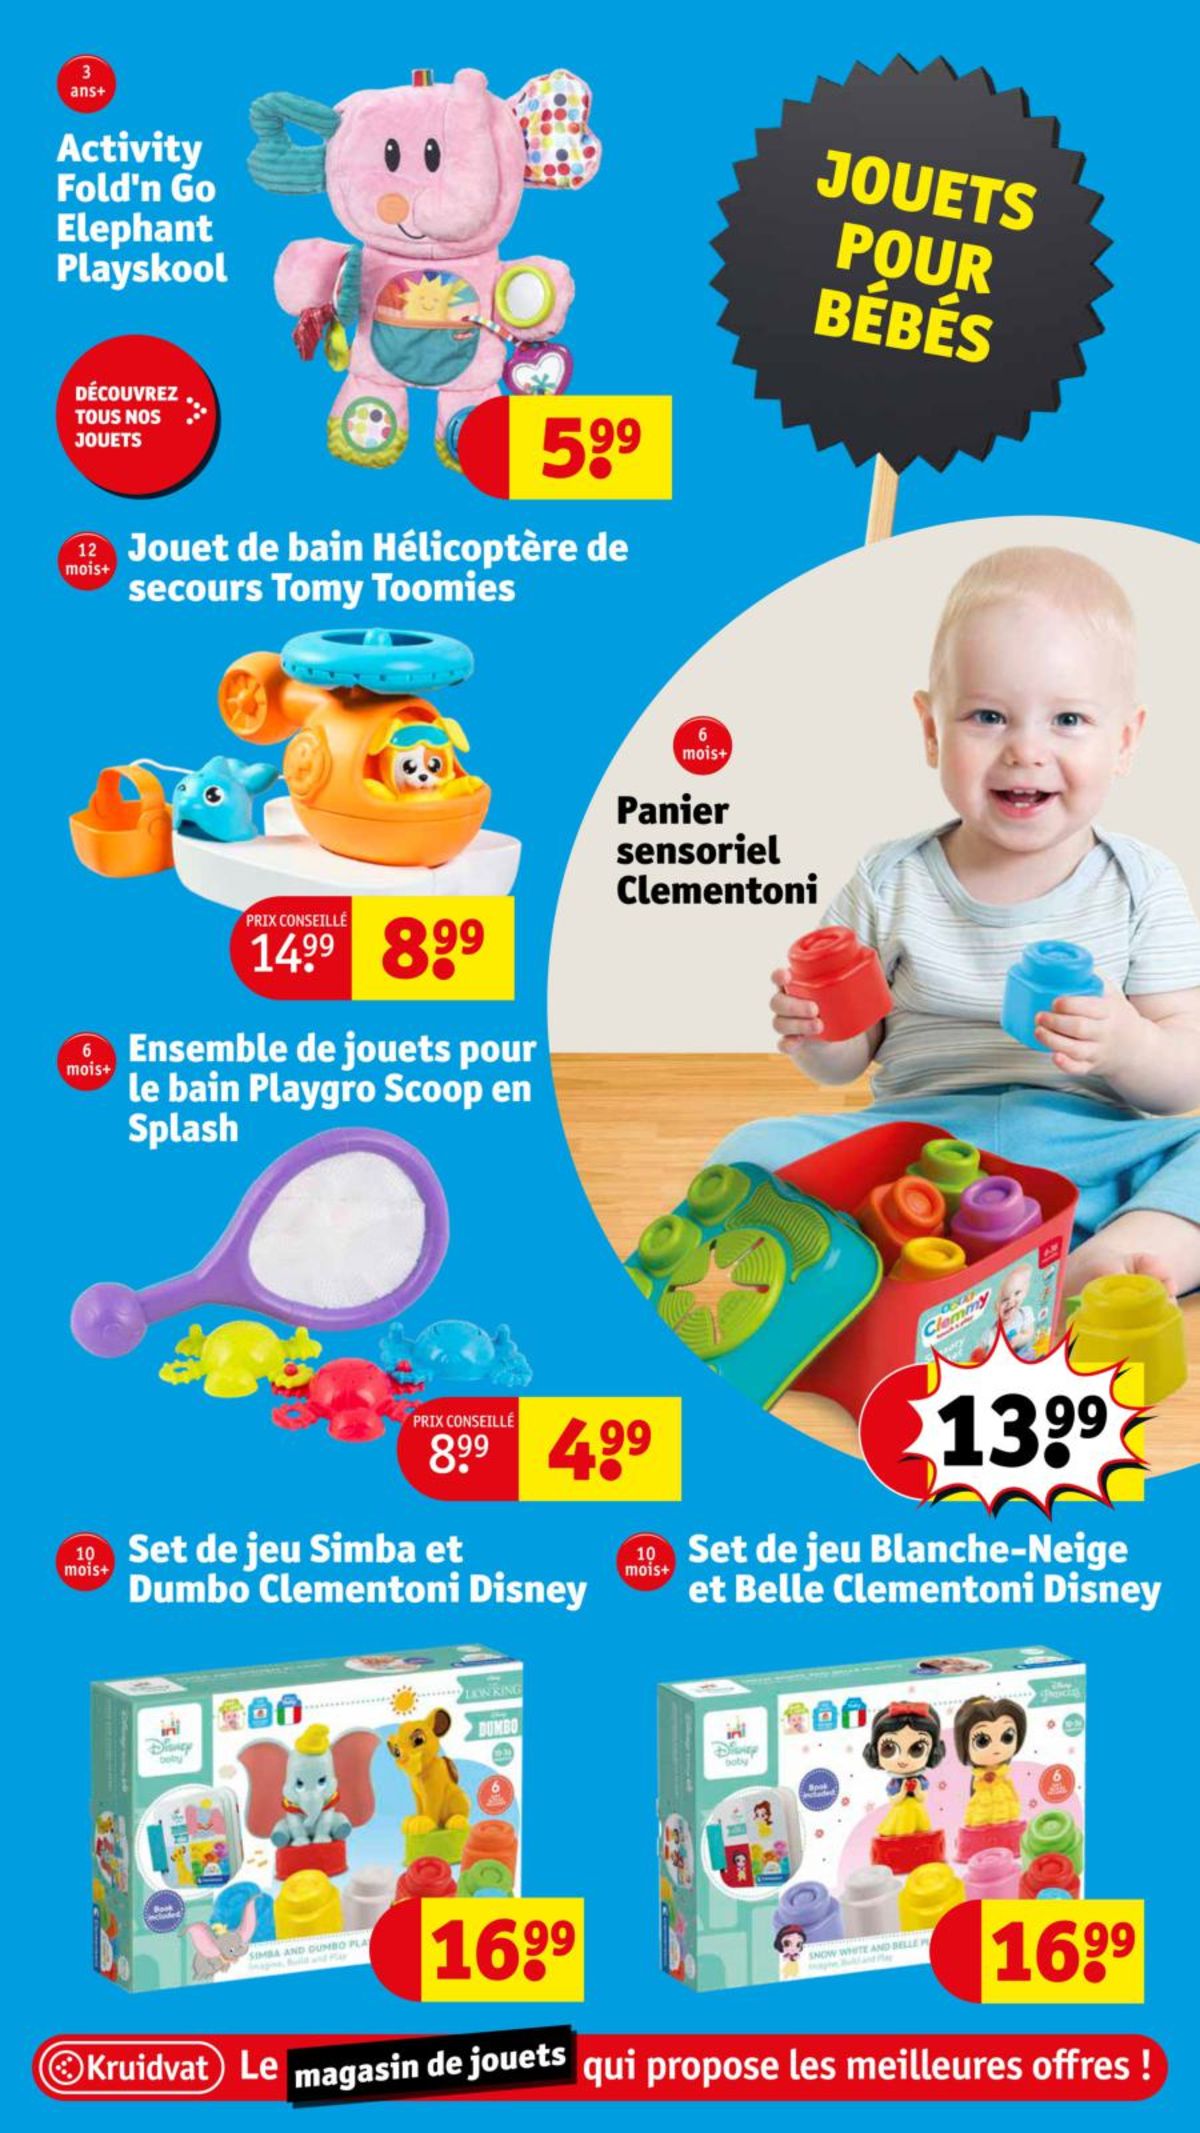 Catalogue Le magasin de jouets aux meilleures offres !, page 00026